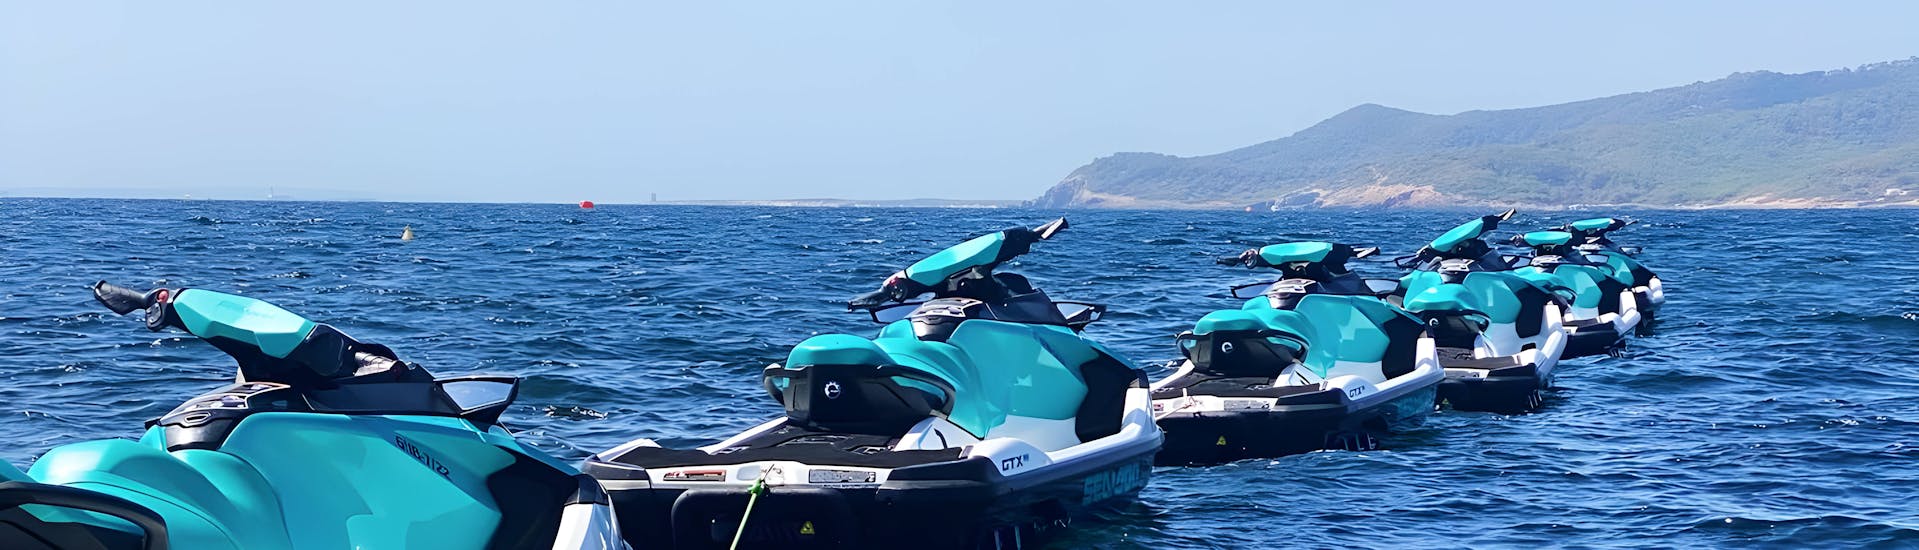 Una flota de motos de agua aparcadas en el mar durante un emocionante tour en Ibiza, explorando la Playa d'en Bossa y Santa Eulalia con Enjoy Watersports Ibiza.